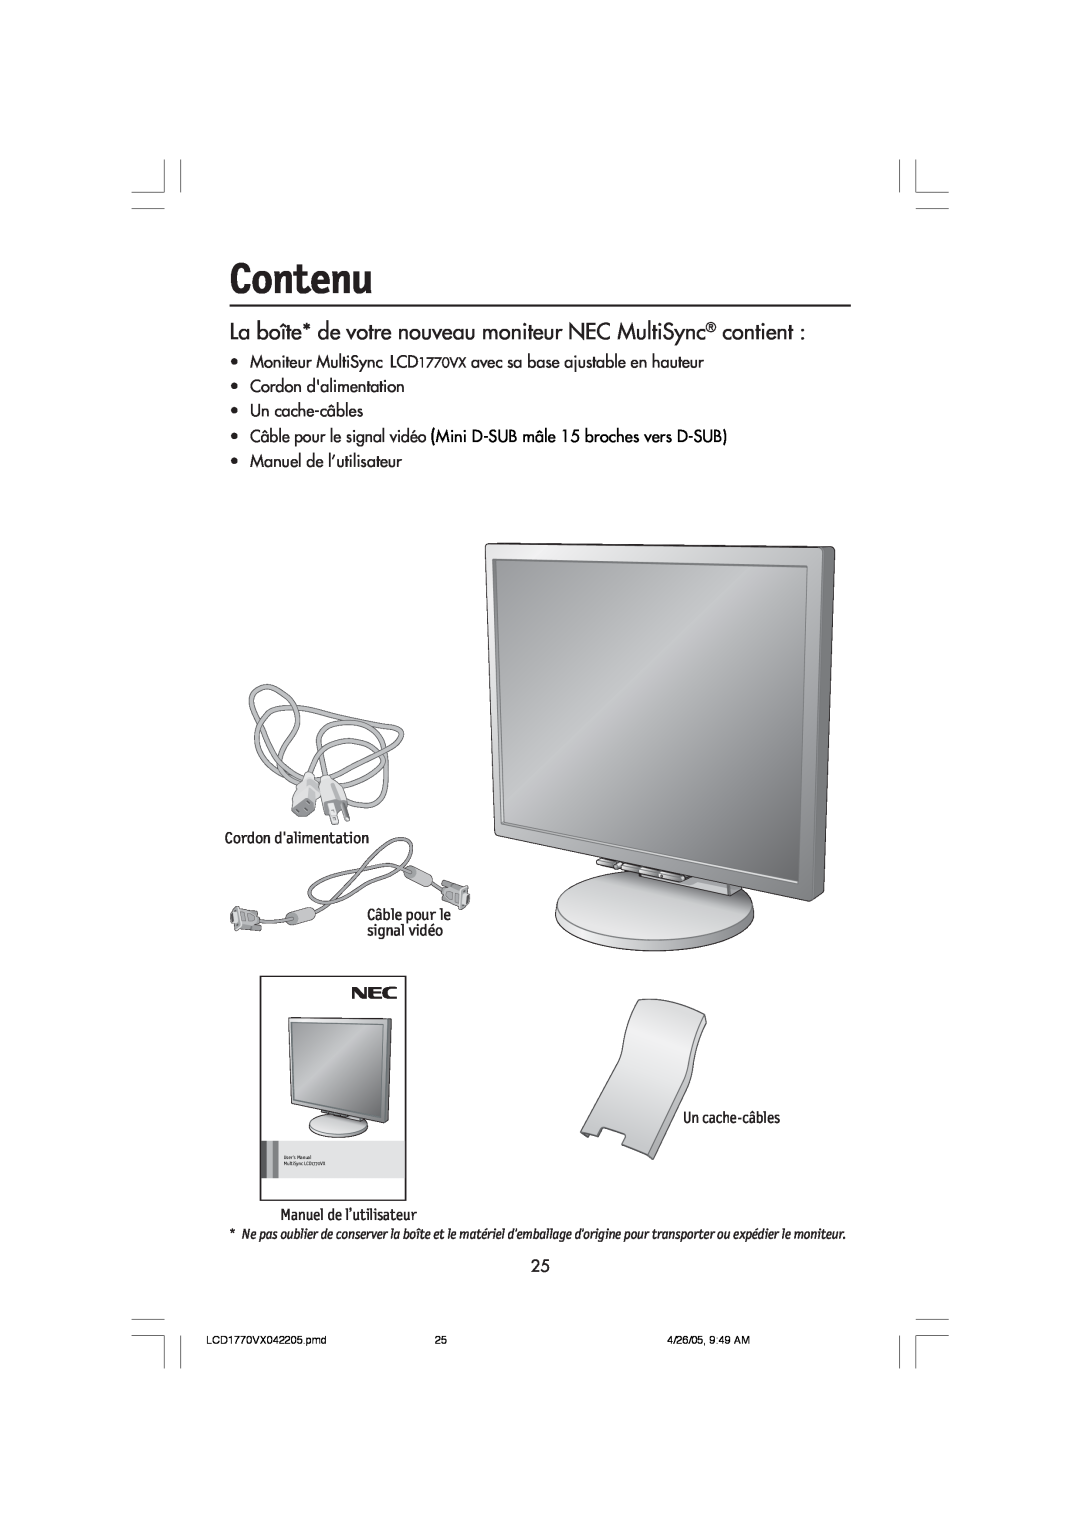 NEC LCD1770VX user manual Contenu, La boîte* de votre nouveau moniteur NEC MultiSync contient, Manuel de l’utilisateur 